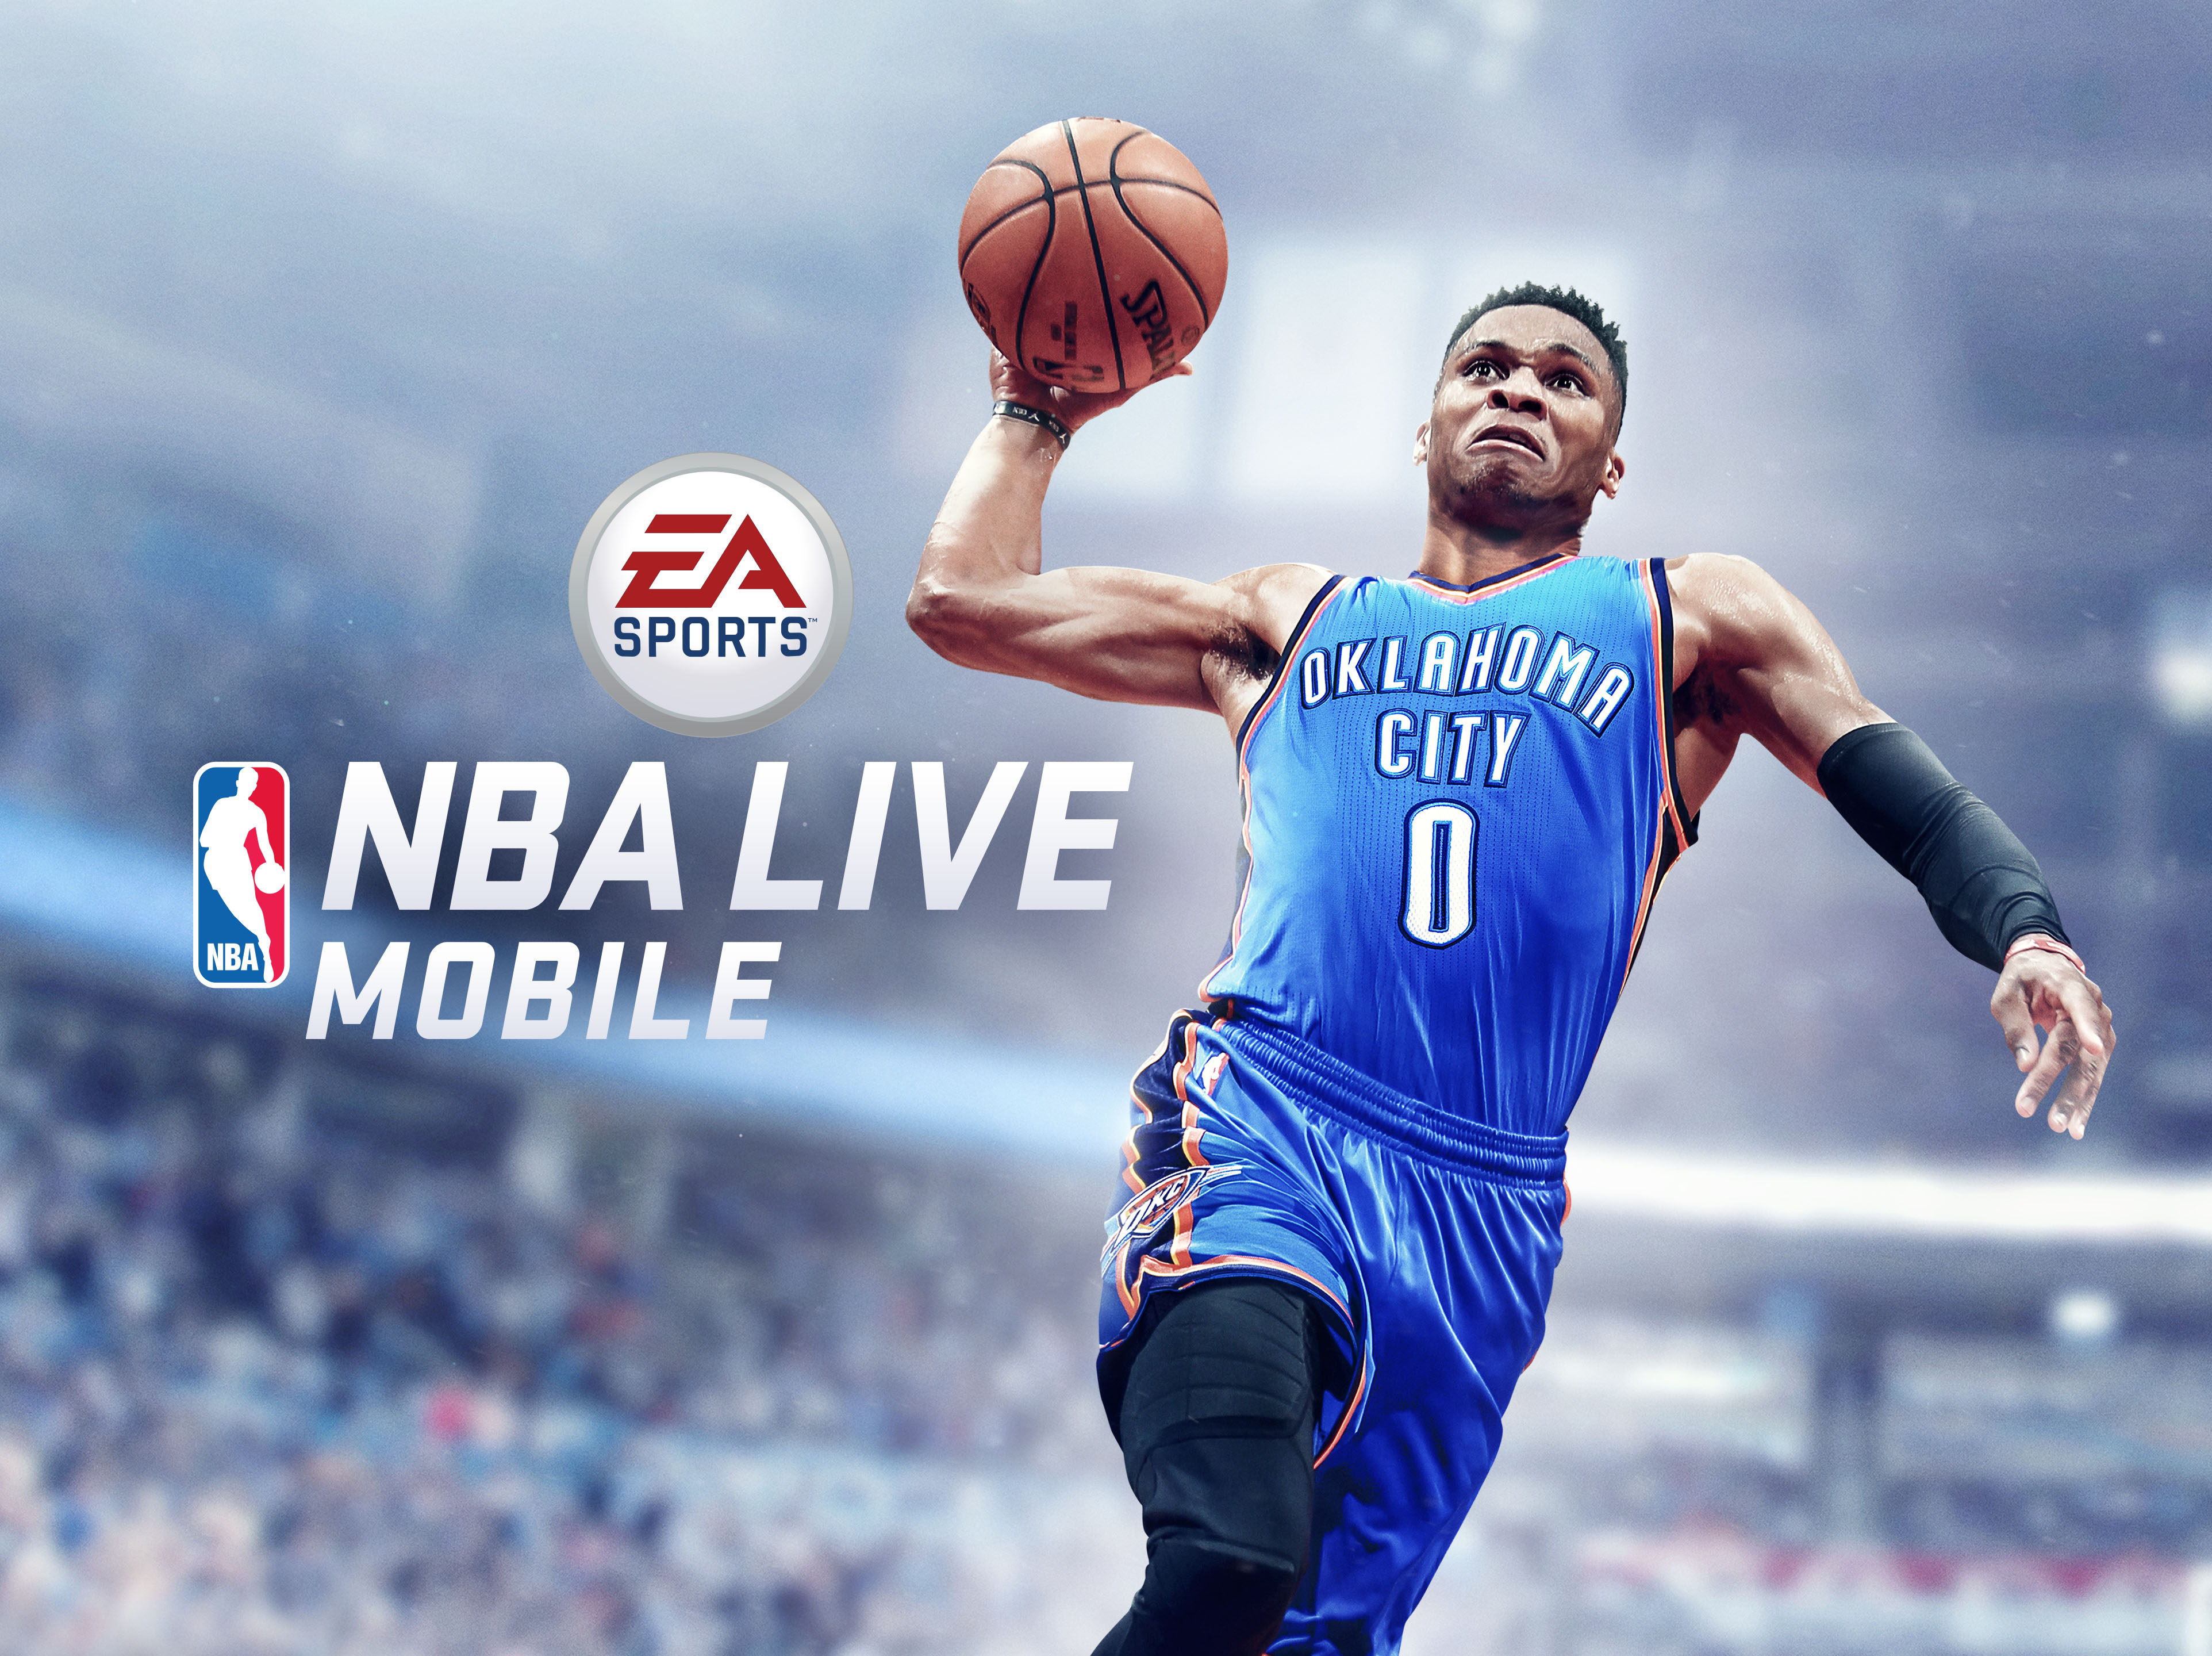 EA SPORTS NBA LIVE Mobile Launch